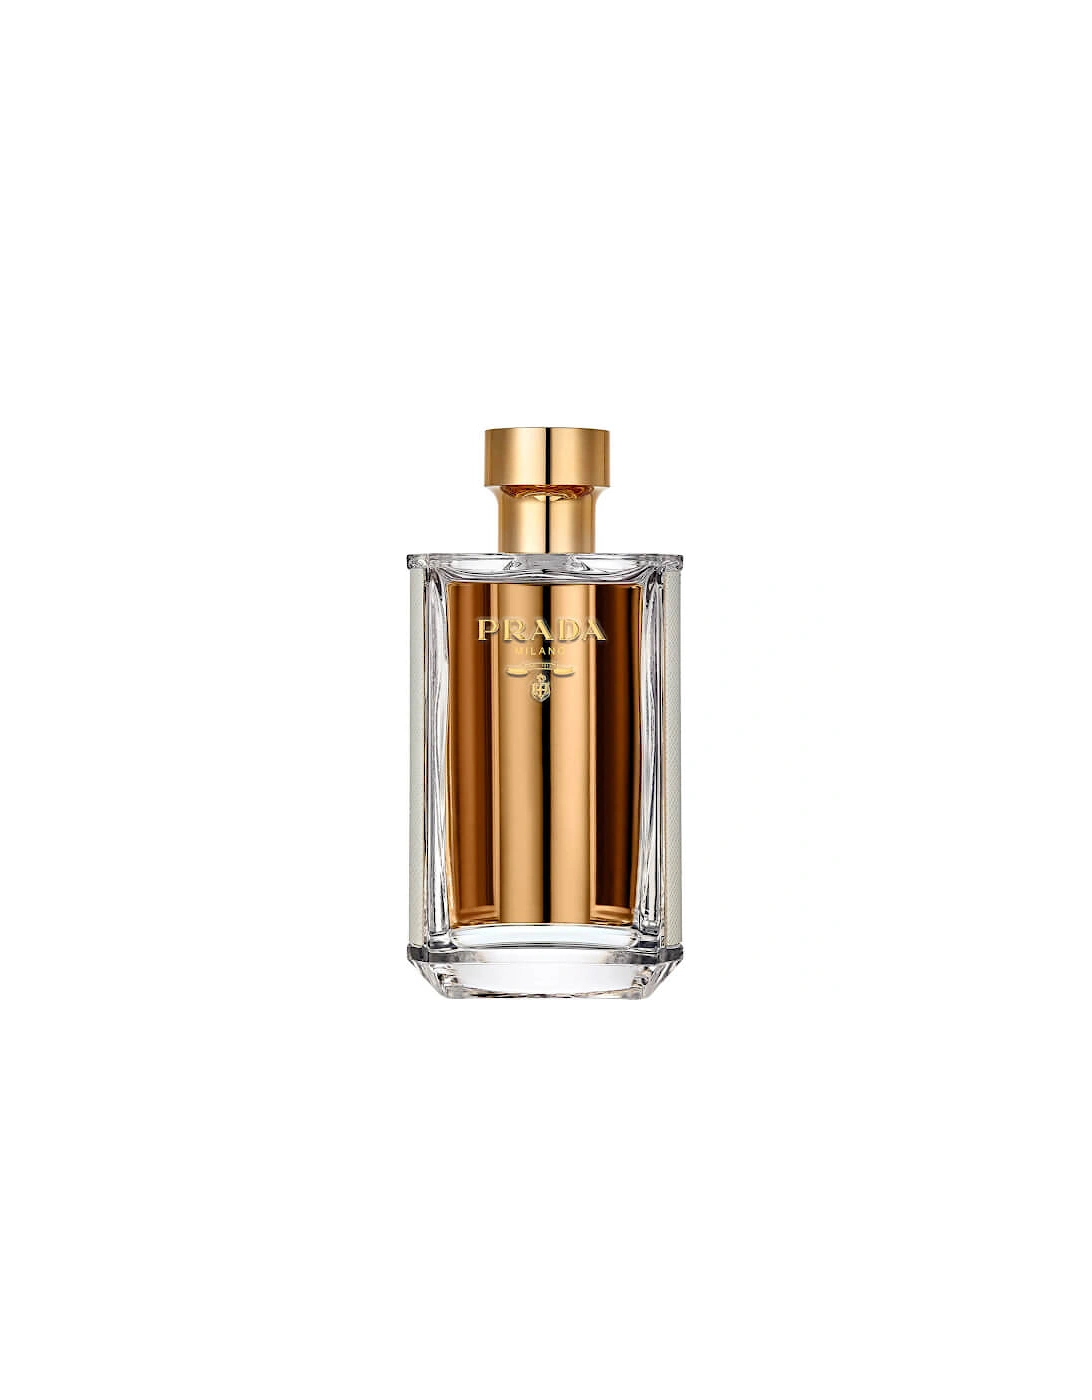 La Femme Eau de Parfum - 100ml, 2 of 1